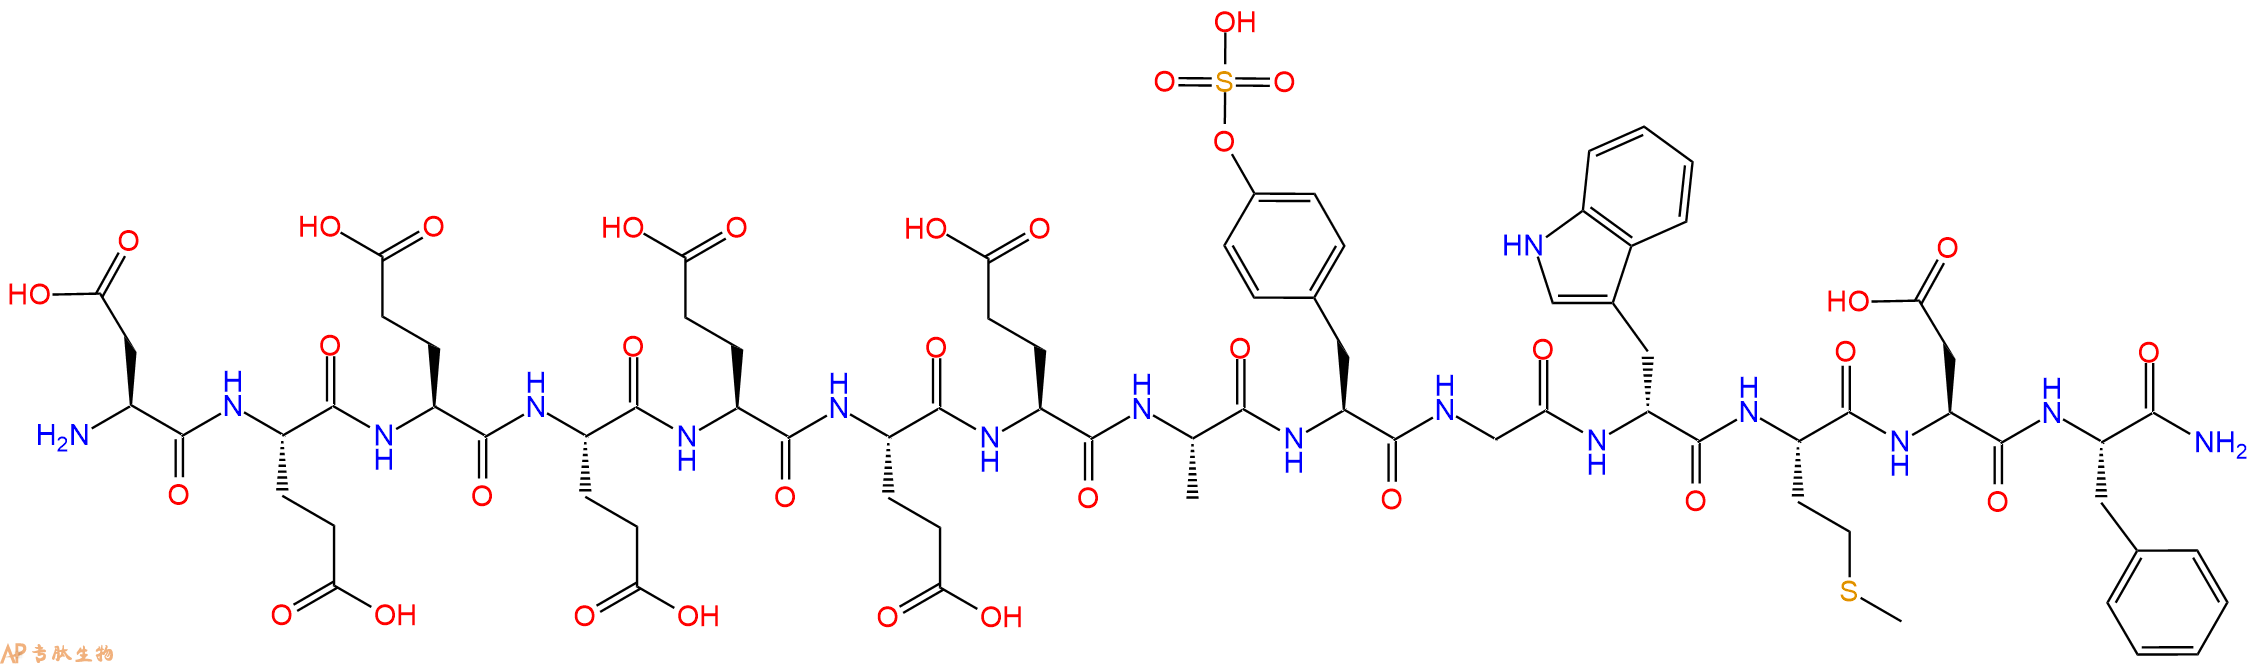 专肽生物产品H-DGlu-Glu-Glu-Glu-Glu-Glu-Ala-Tyr(SO3H)-Gly-DTrp